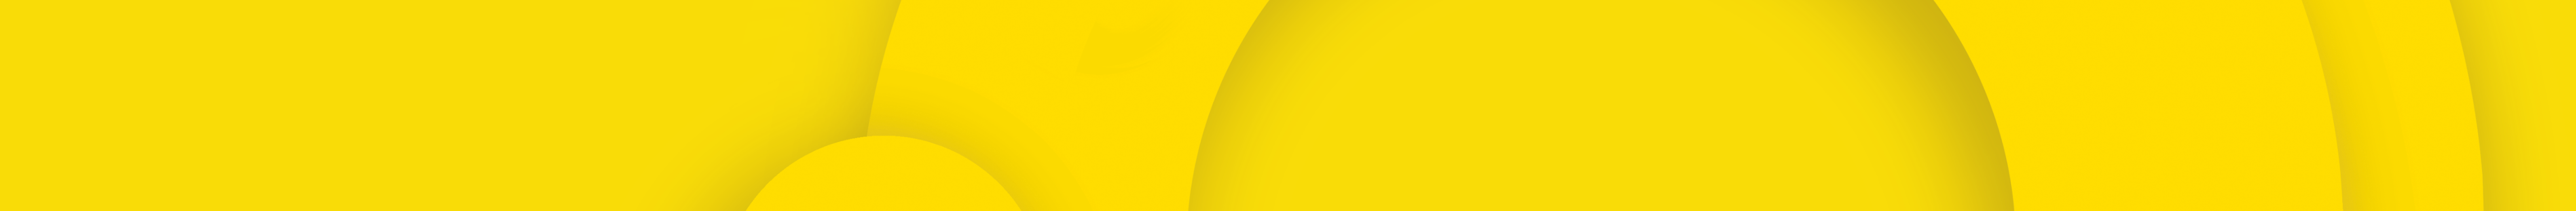 oggetto. design's profile banner